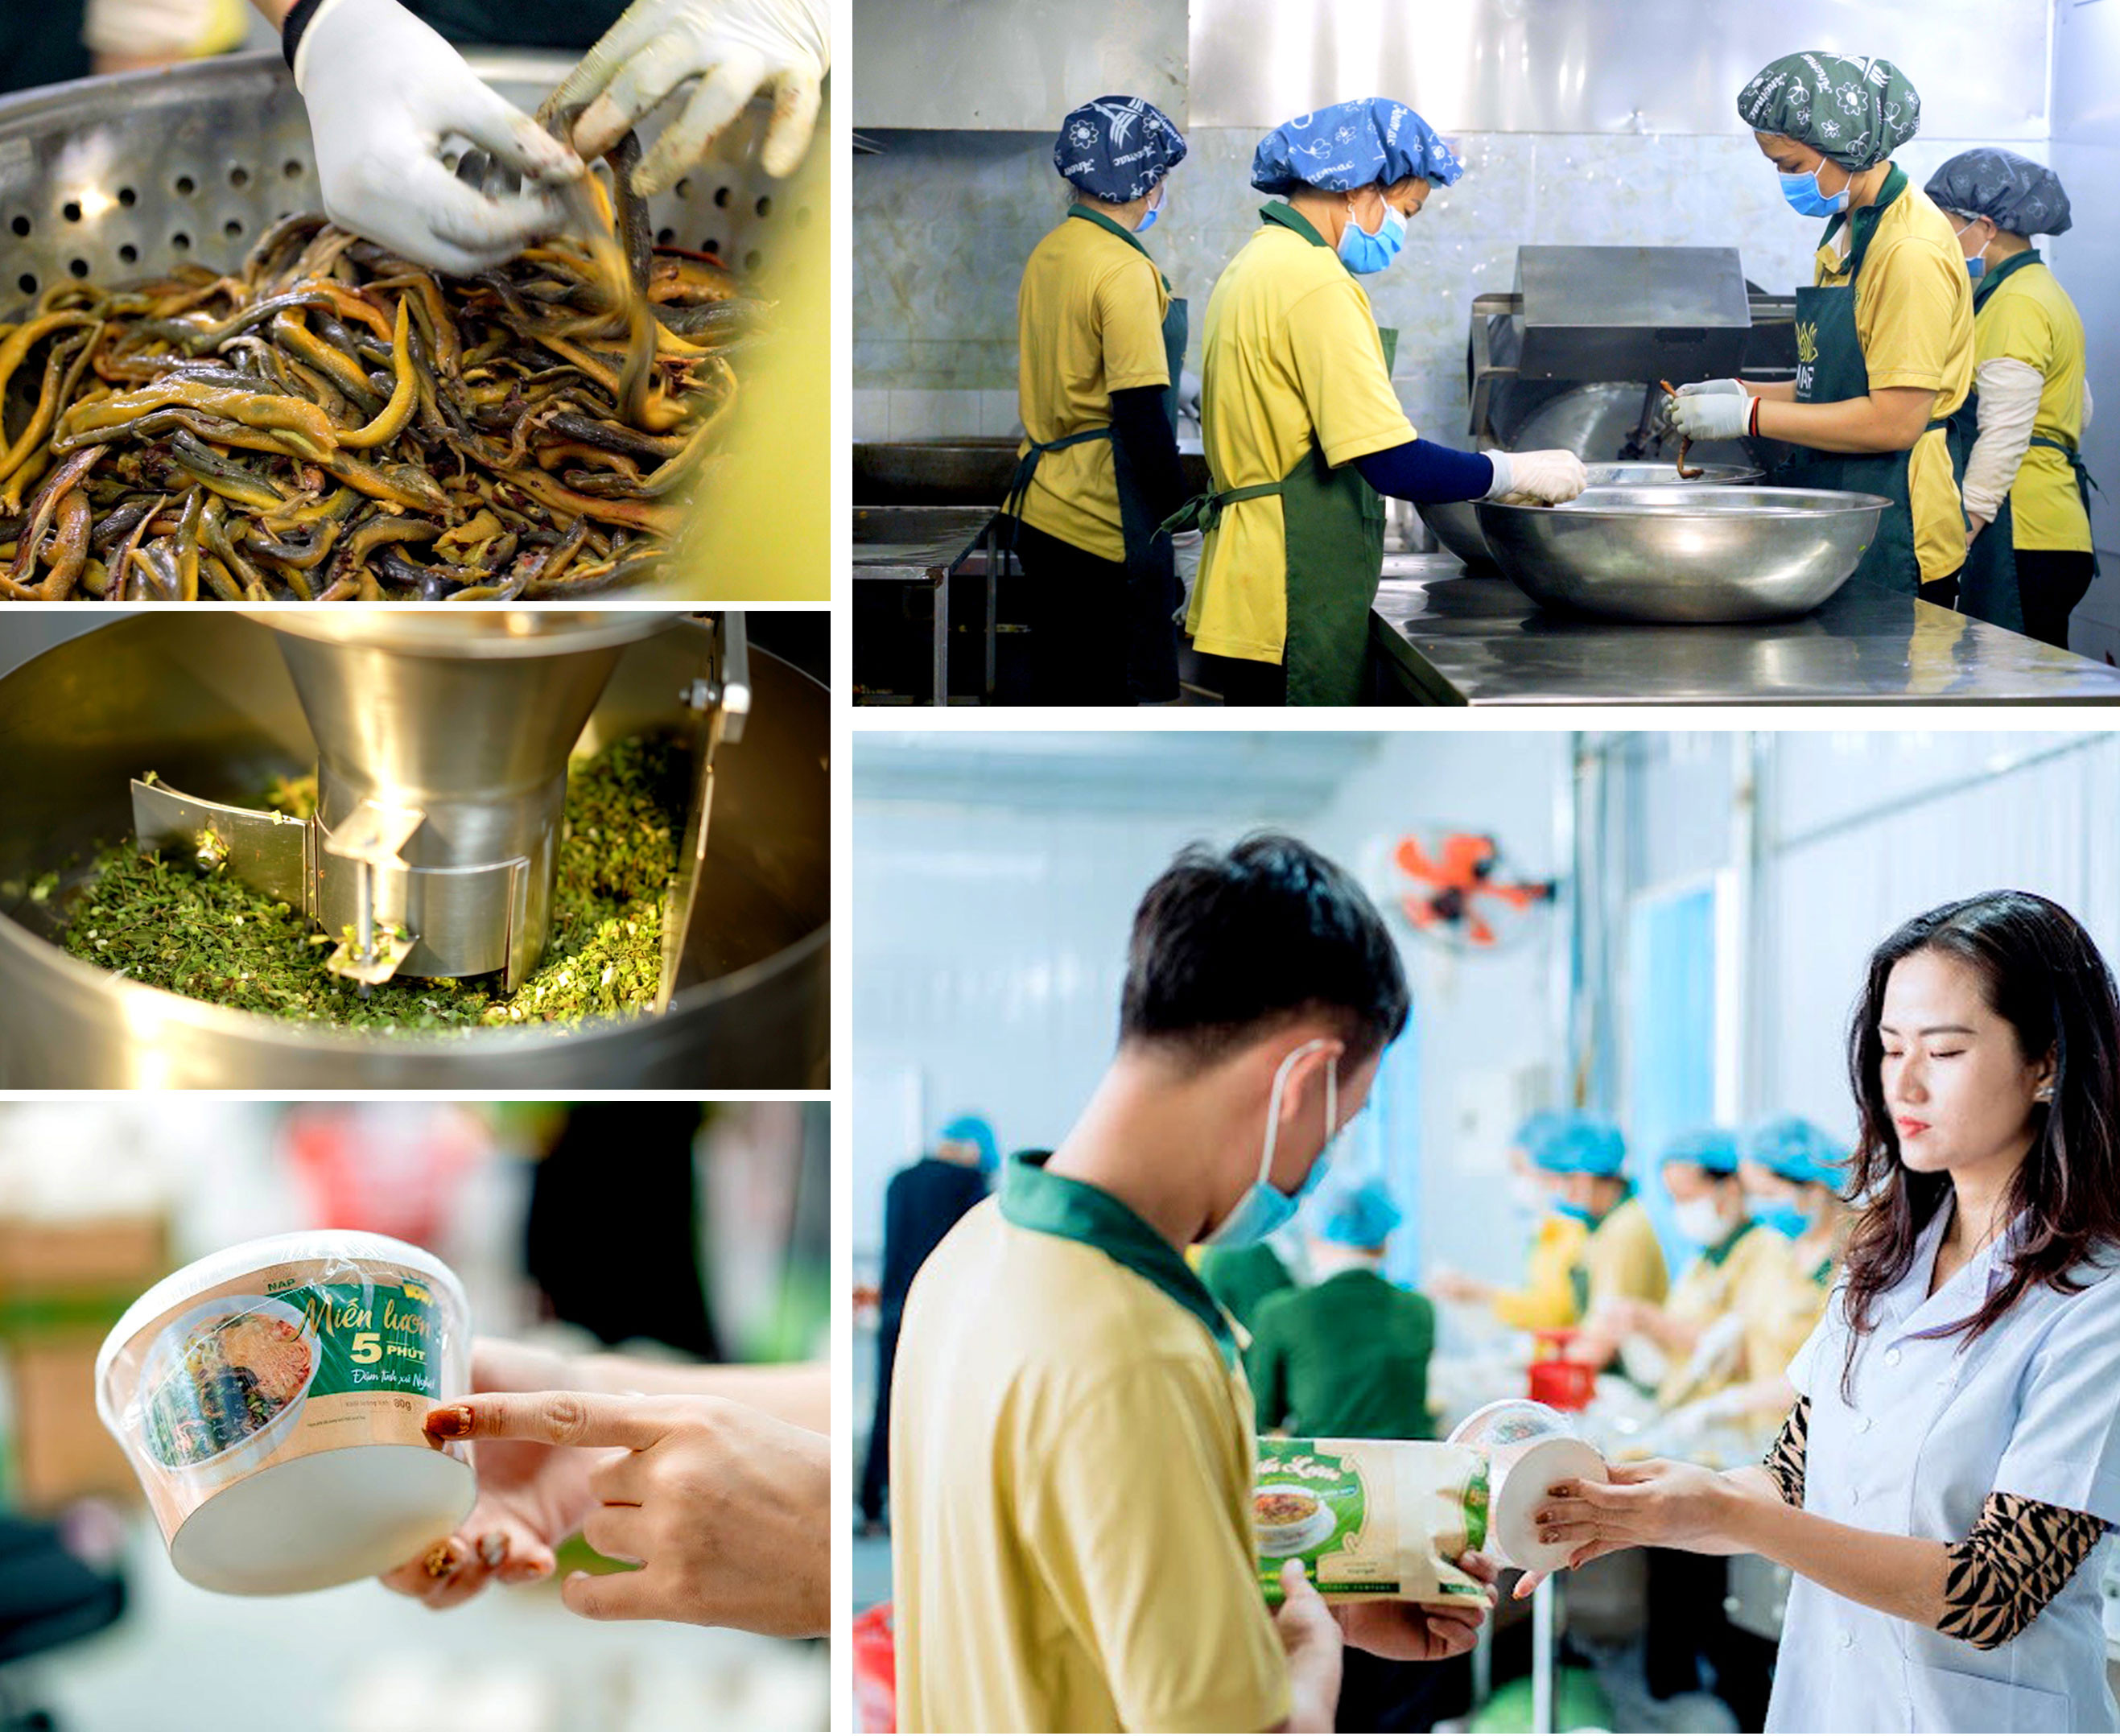 Trần Hà Nhung, cô gái khởi nghiệp từ đặc sản Nghệ An; Để giữ được trọn vị đặc sản lươn trong từng sản phẩm, các công đoạn như chọn nguyên liệu, chế biến, đóng gói đều cần sự chỉn chu, công phu.